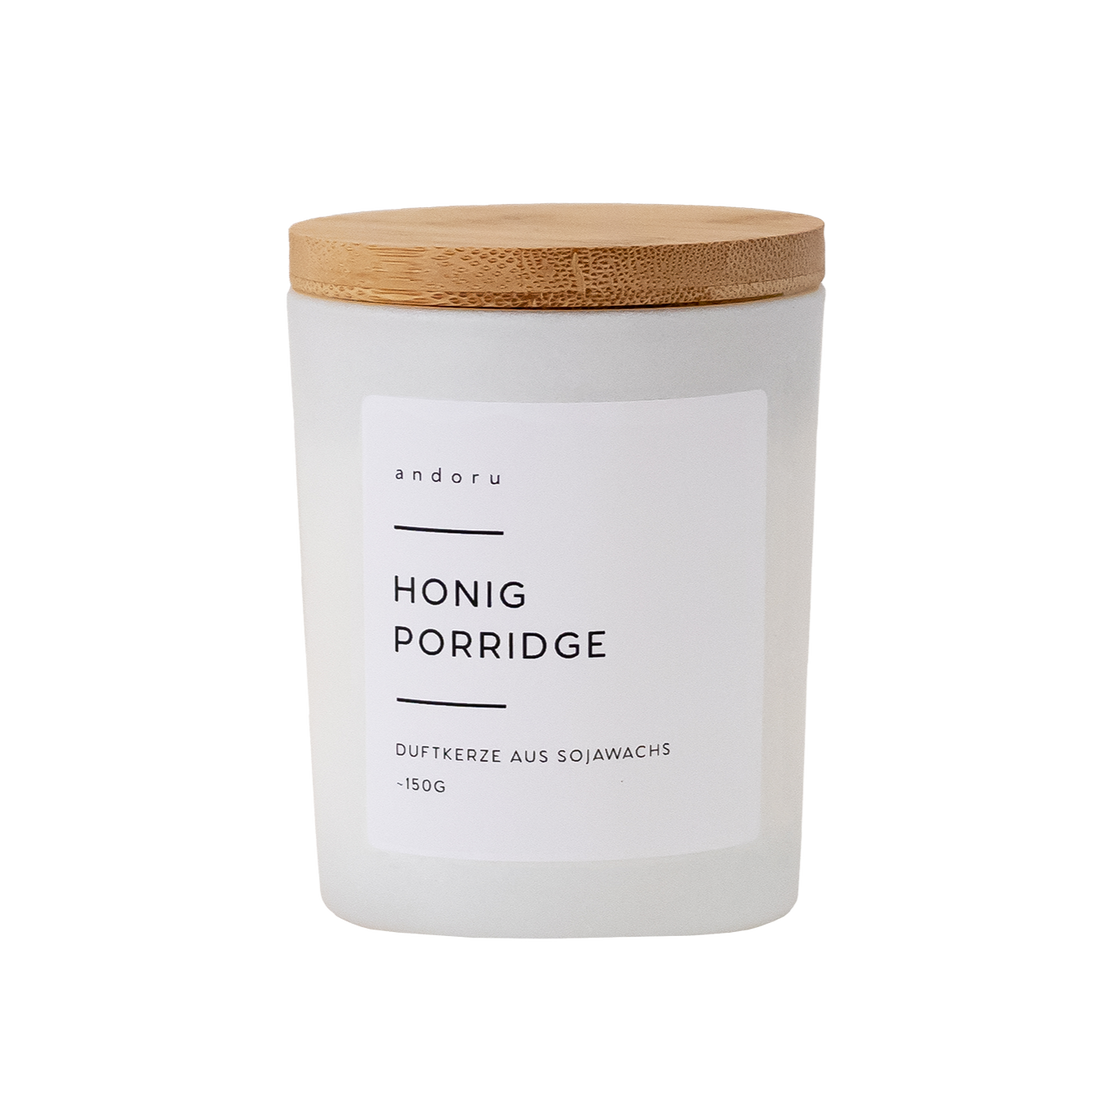 Honig Porridge - andoru Duftkerze im weißen Glas mit Deckel aus Holz